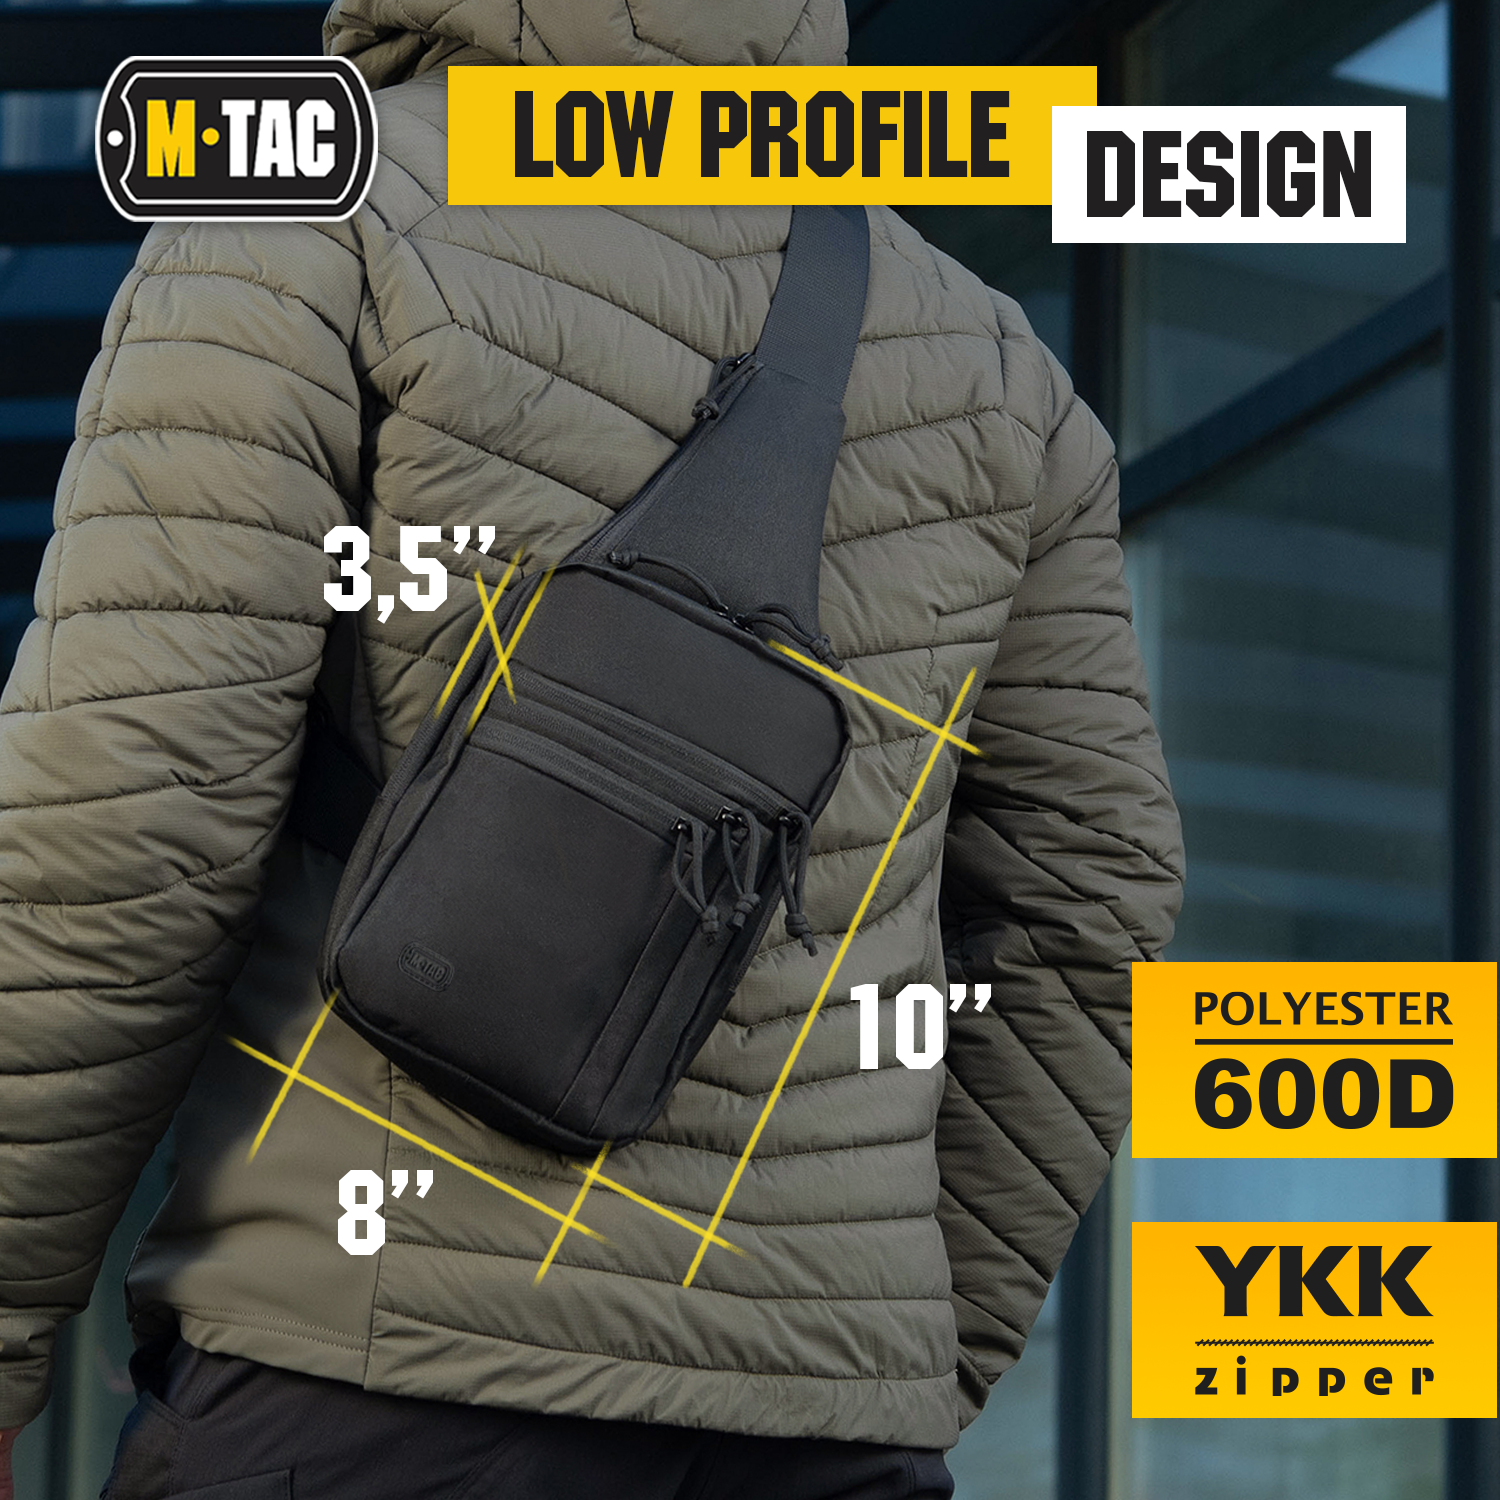 M-Tac LEFT-HANDED Tactical Sling Bag for Men with Holster